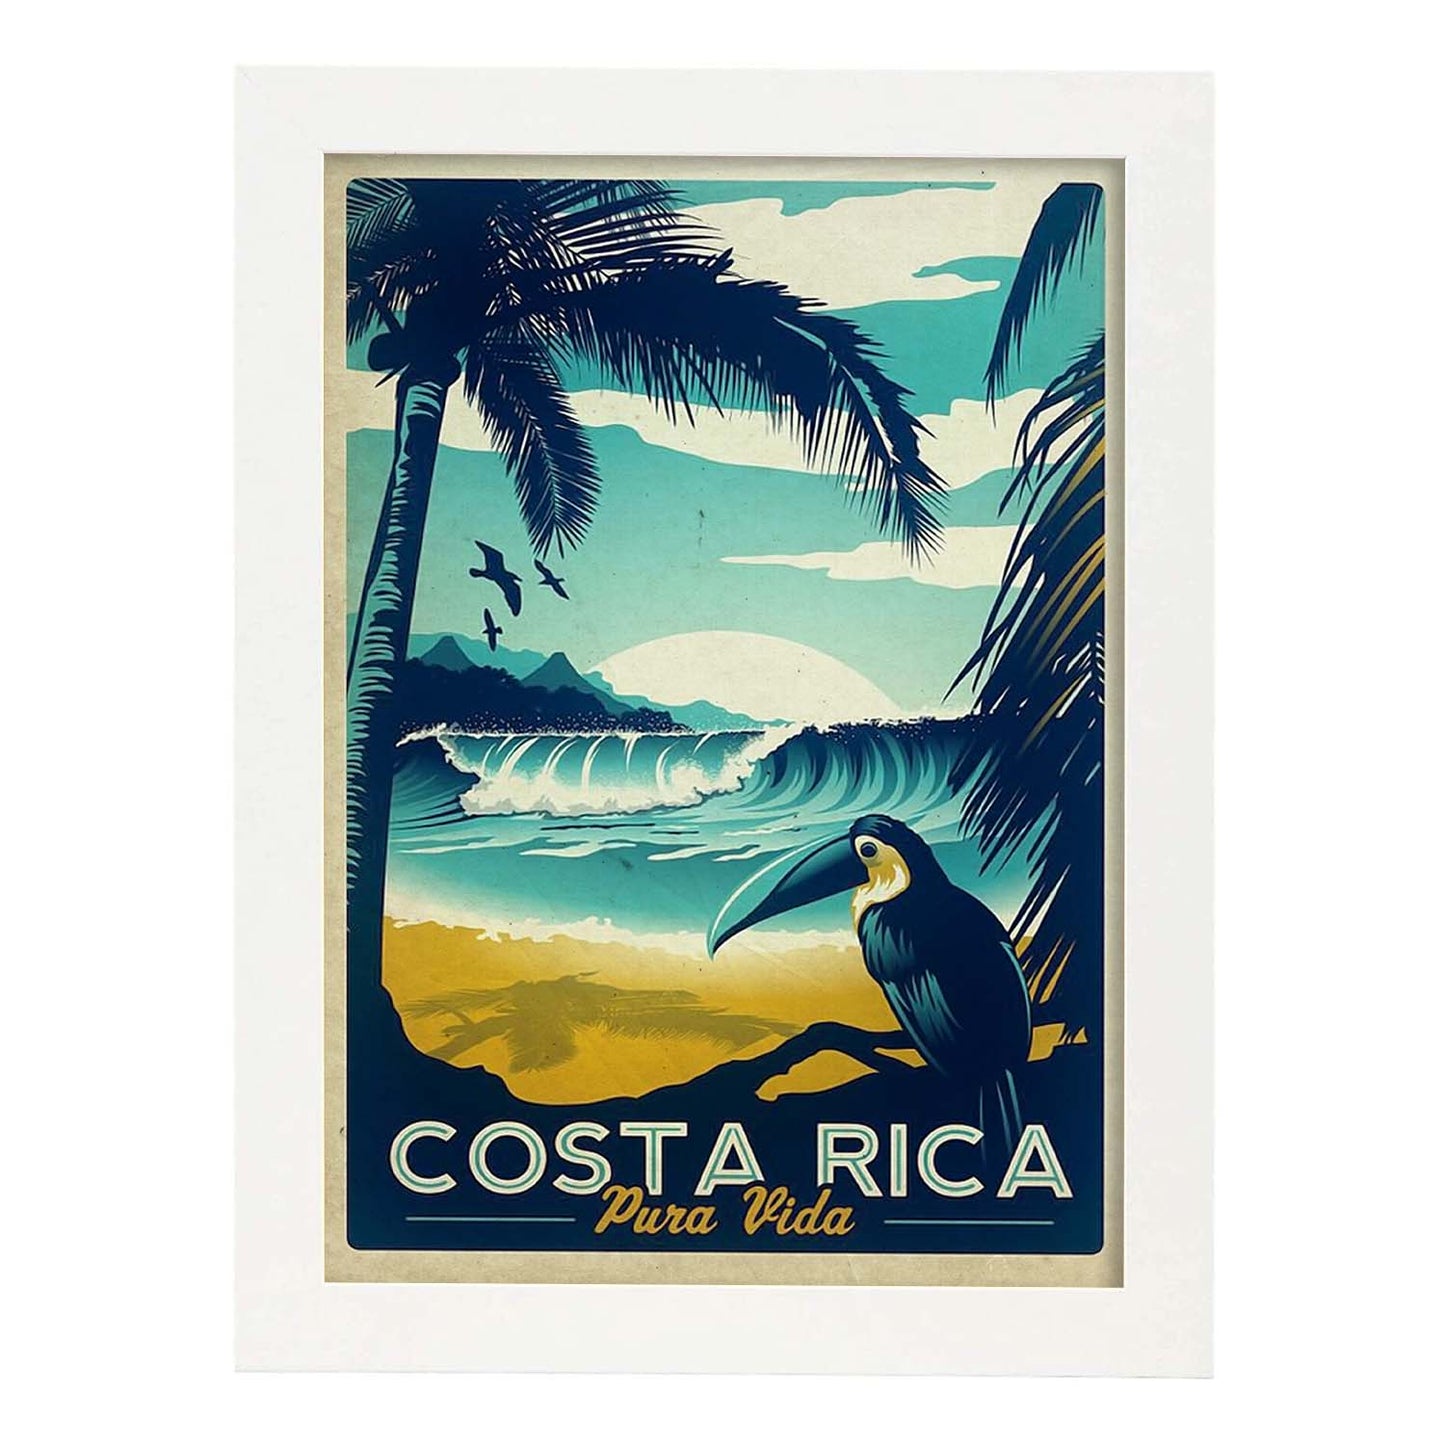 Poster vintage de Costa rica. con imágenes vintage y de publicidad antigua.-Artwork-Nacnic-A4-Marco Blanco-Nacnic Estudio SL